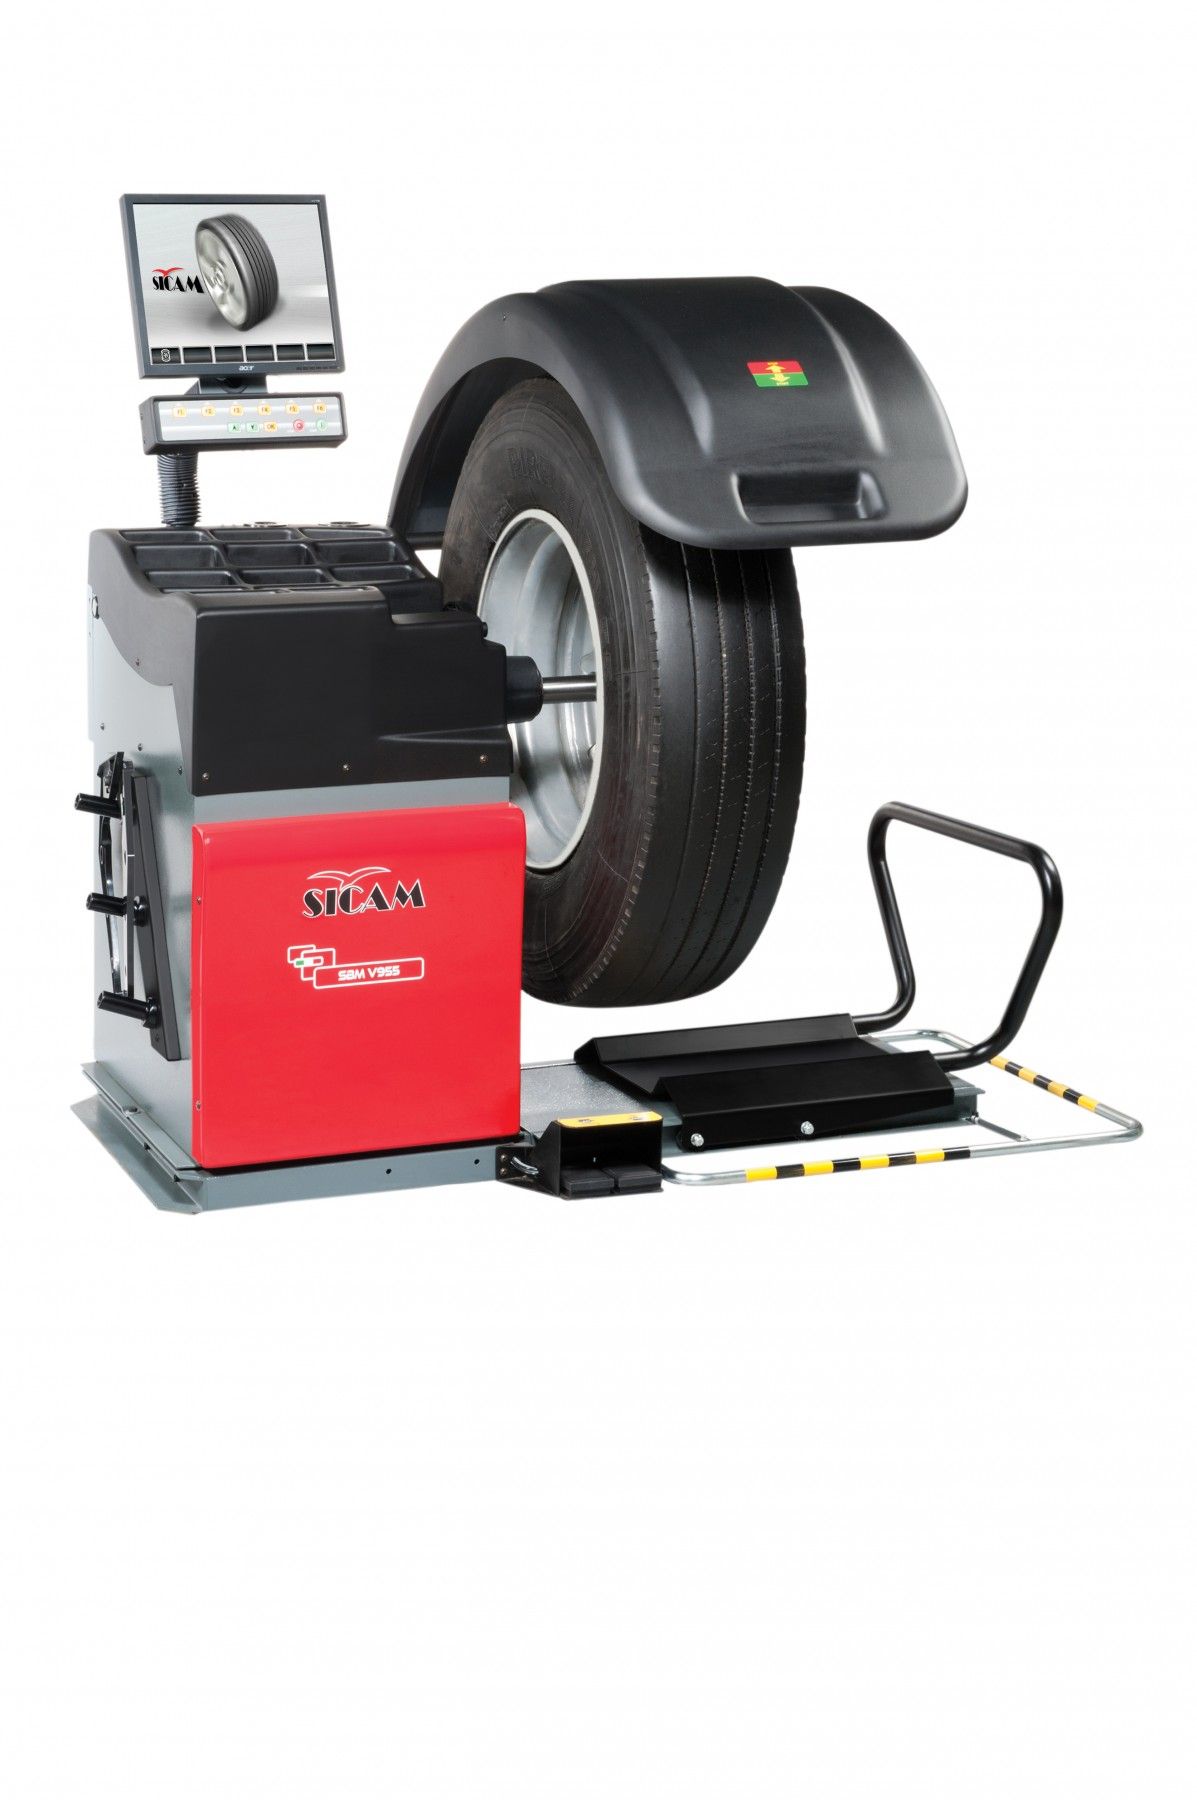 Sicam SBM955 Балансировочный стенд для колес грузовых автомобилей с ЖК-монитором (код 1694301787)